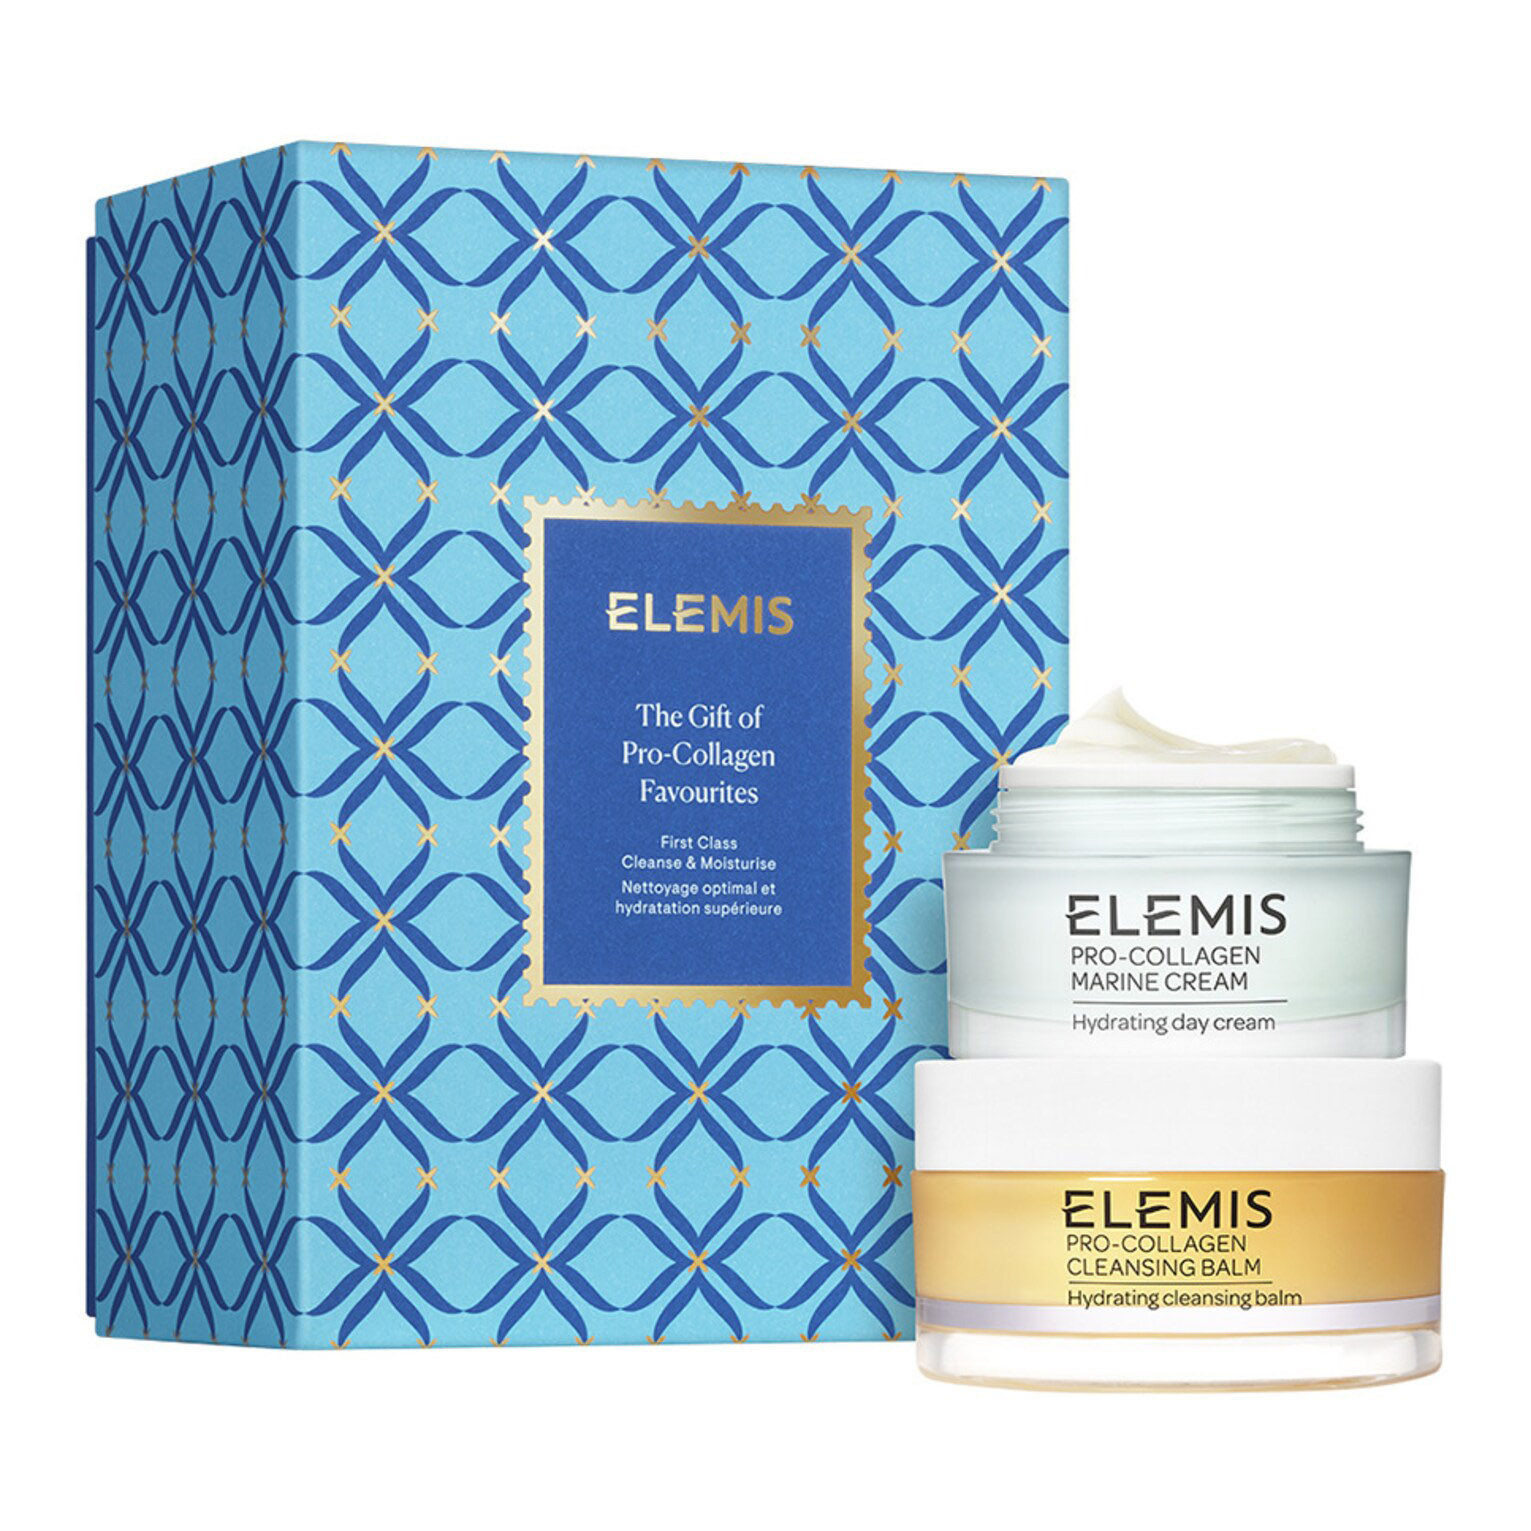 Подарочный набор Elemis The Gift Of Pro-Collagen, 2 предмета набор средств для лица elemis набор pro collagen skincare stories